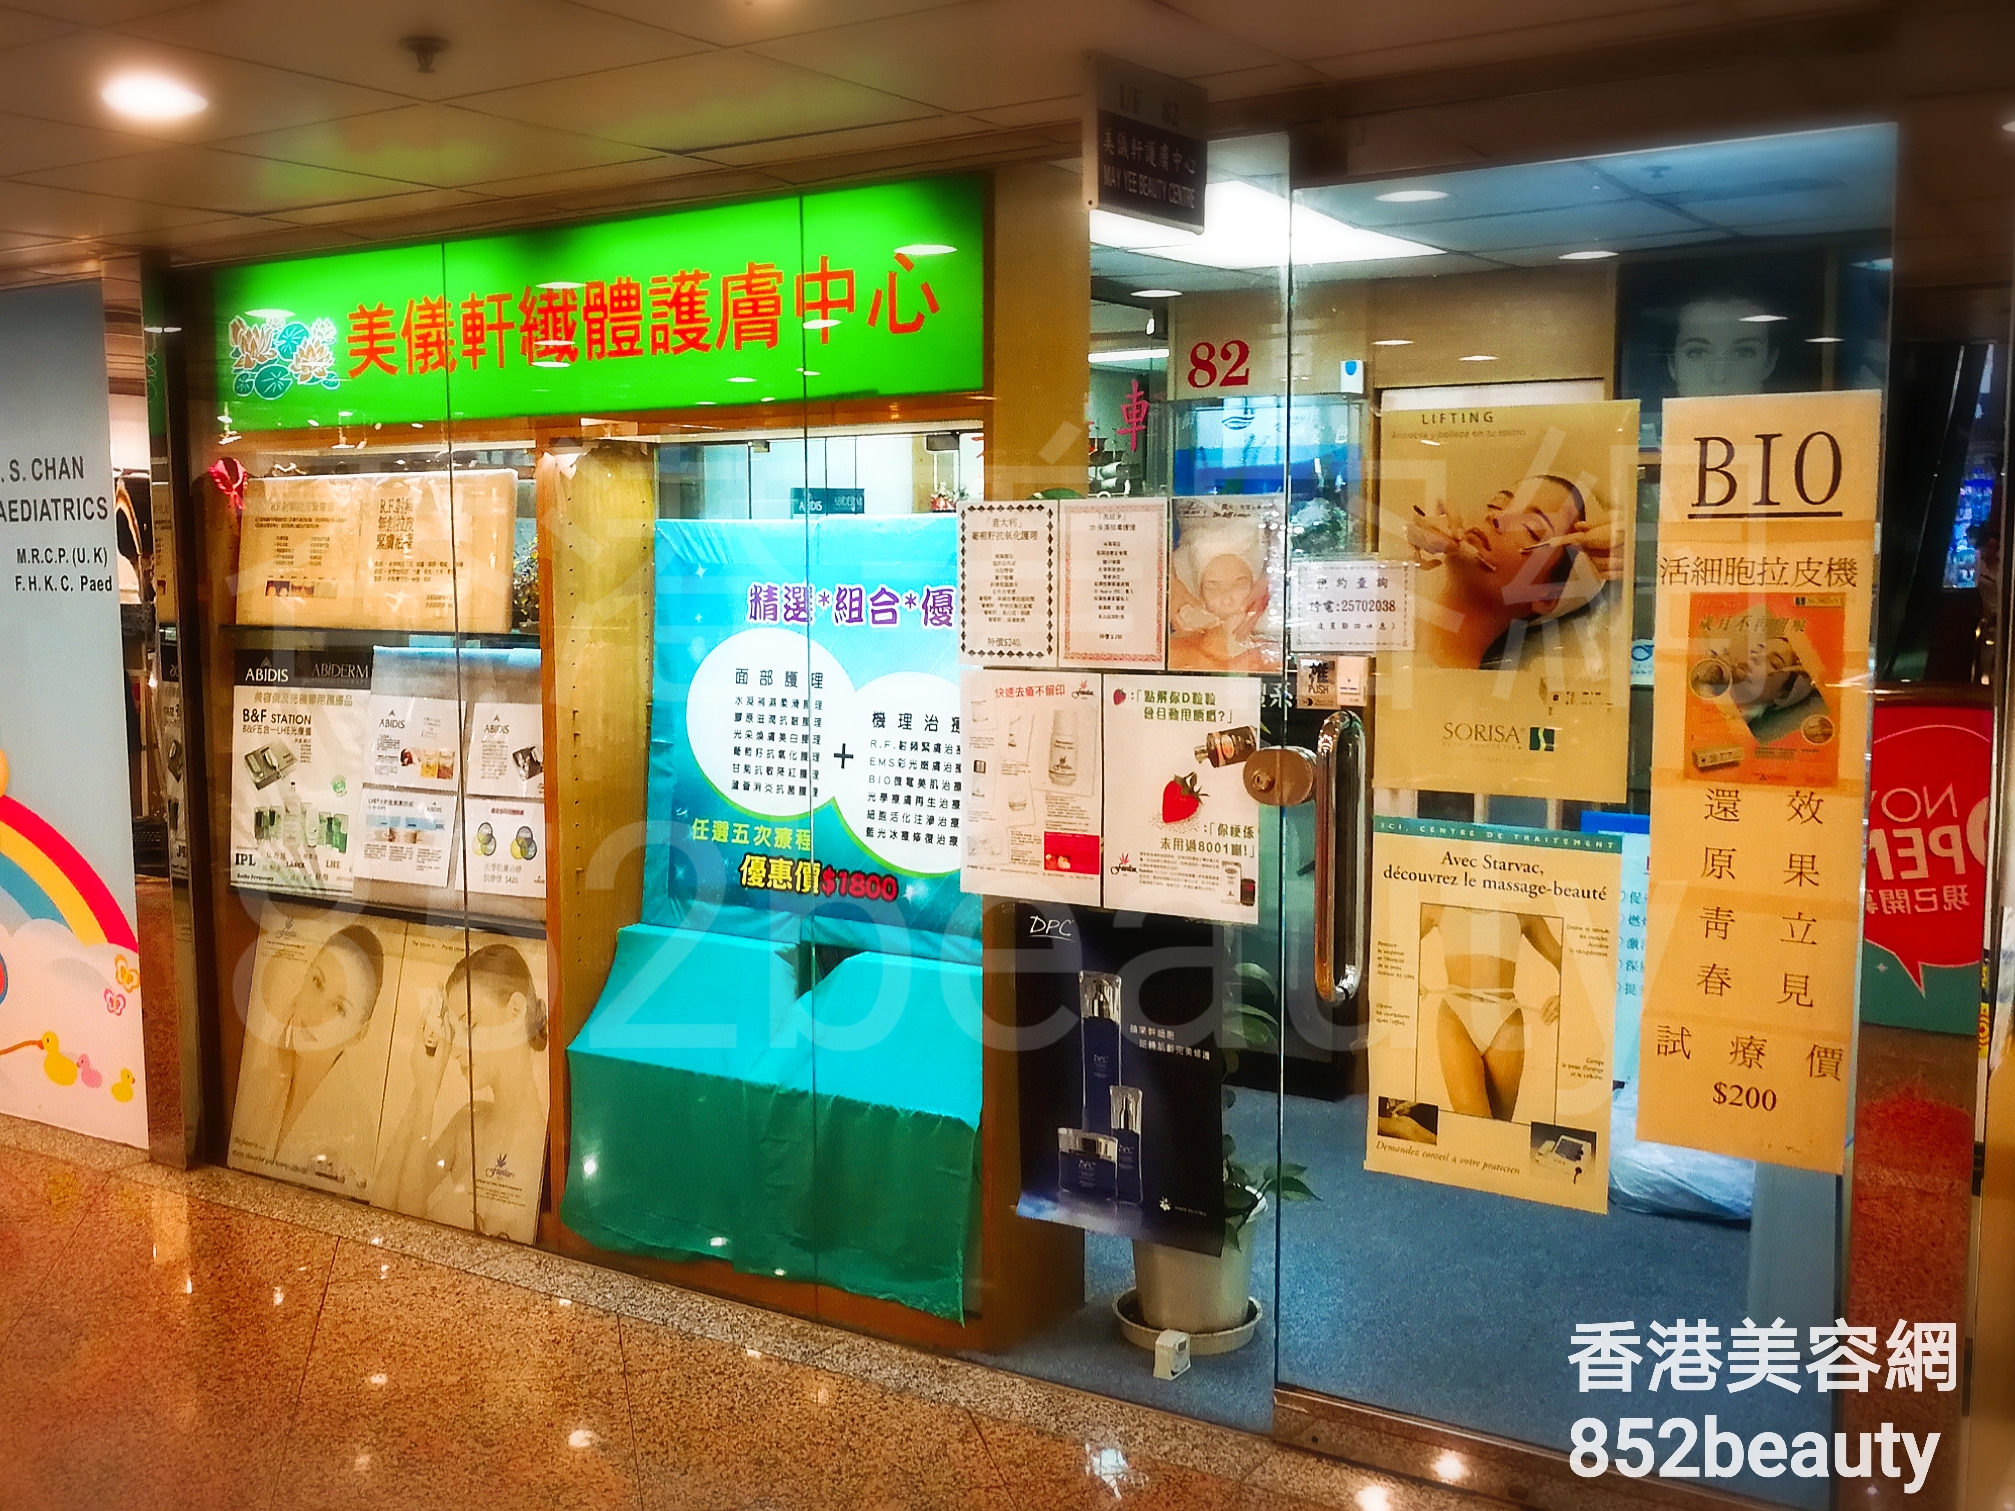 香港美容網 Hong Kong Beauty Salon 美容院 / 美容師: 美儀軒纖體護膚中心